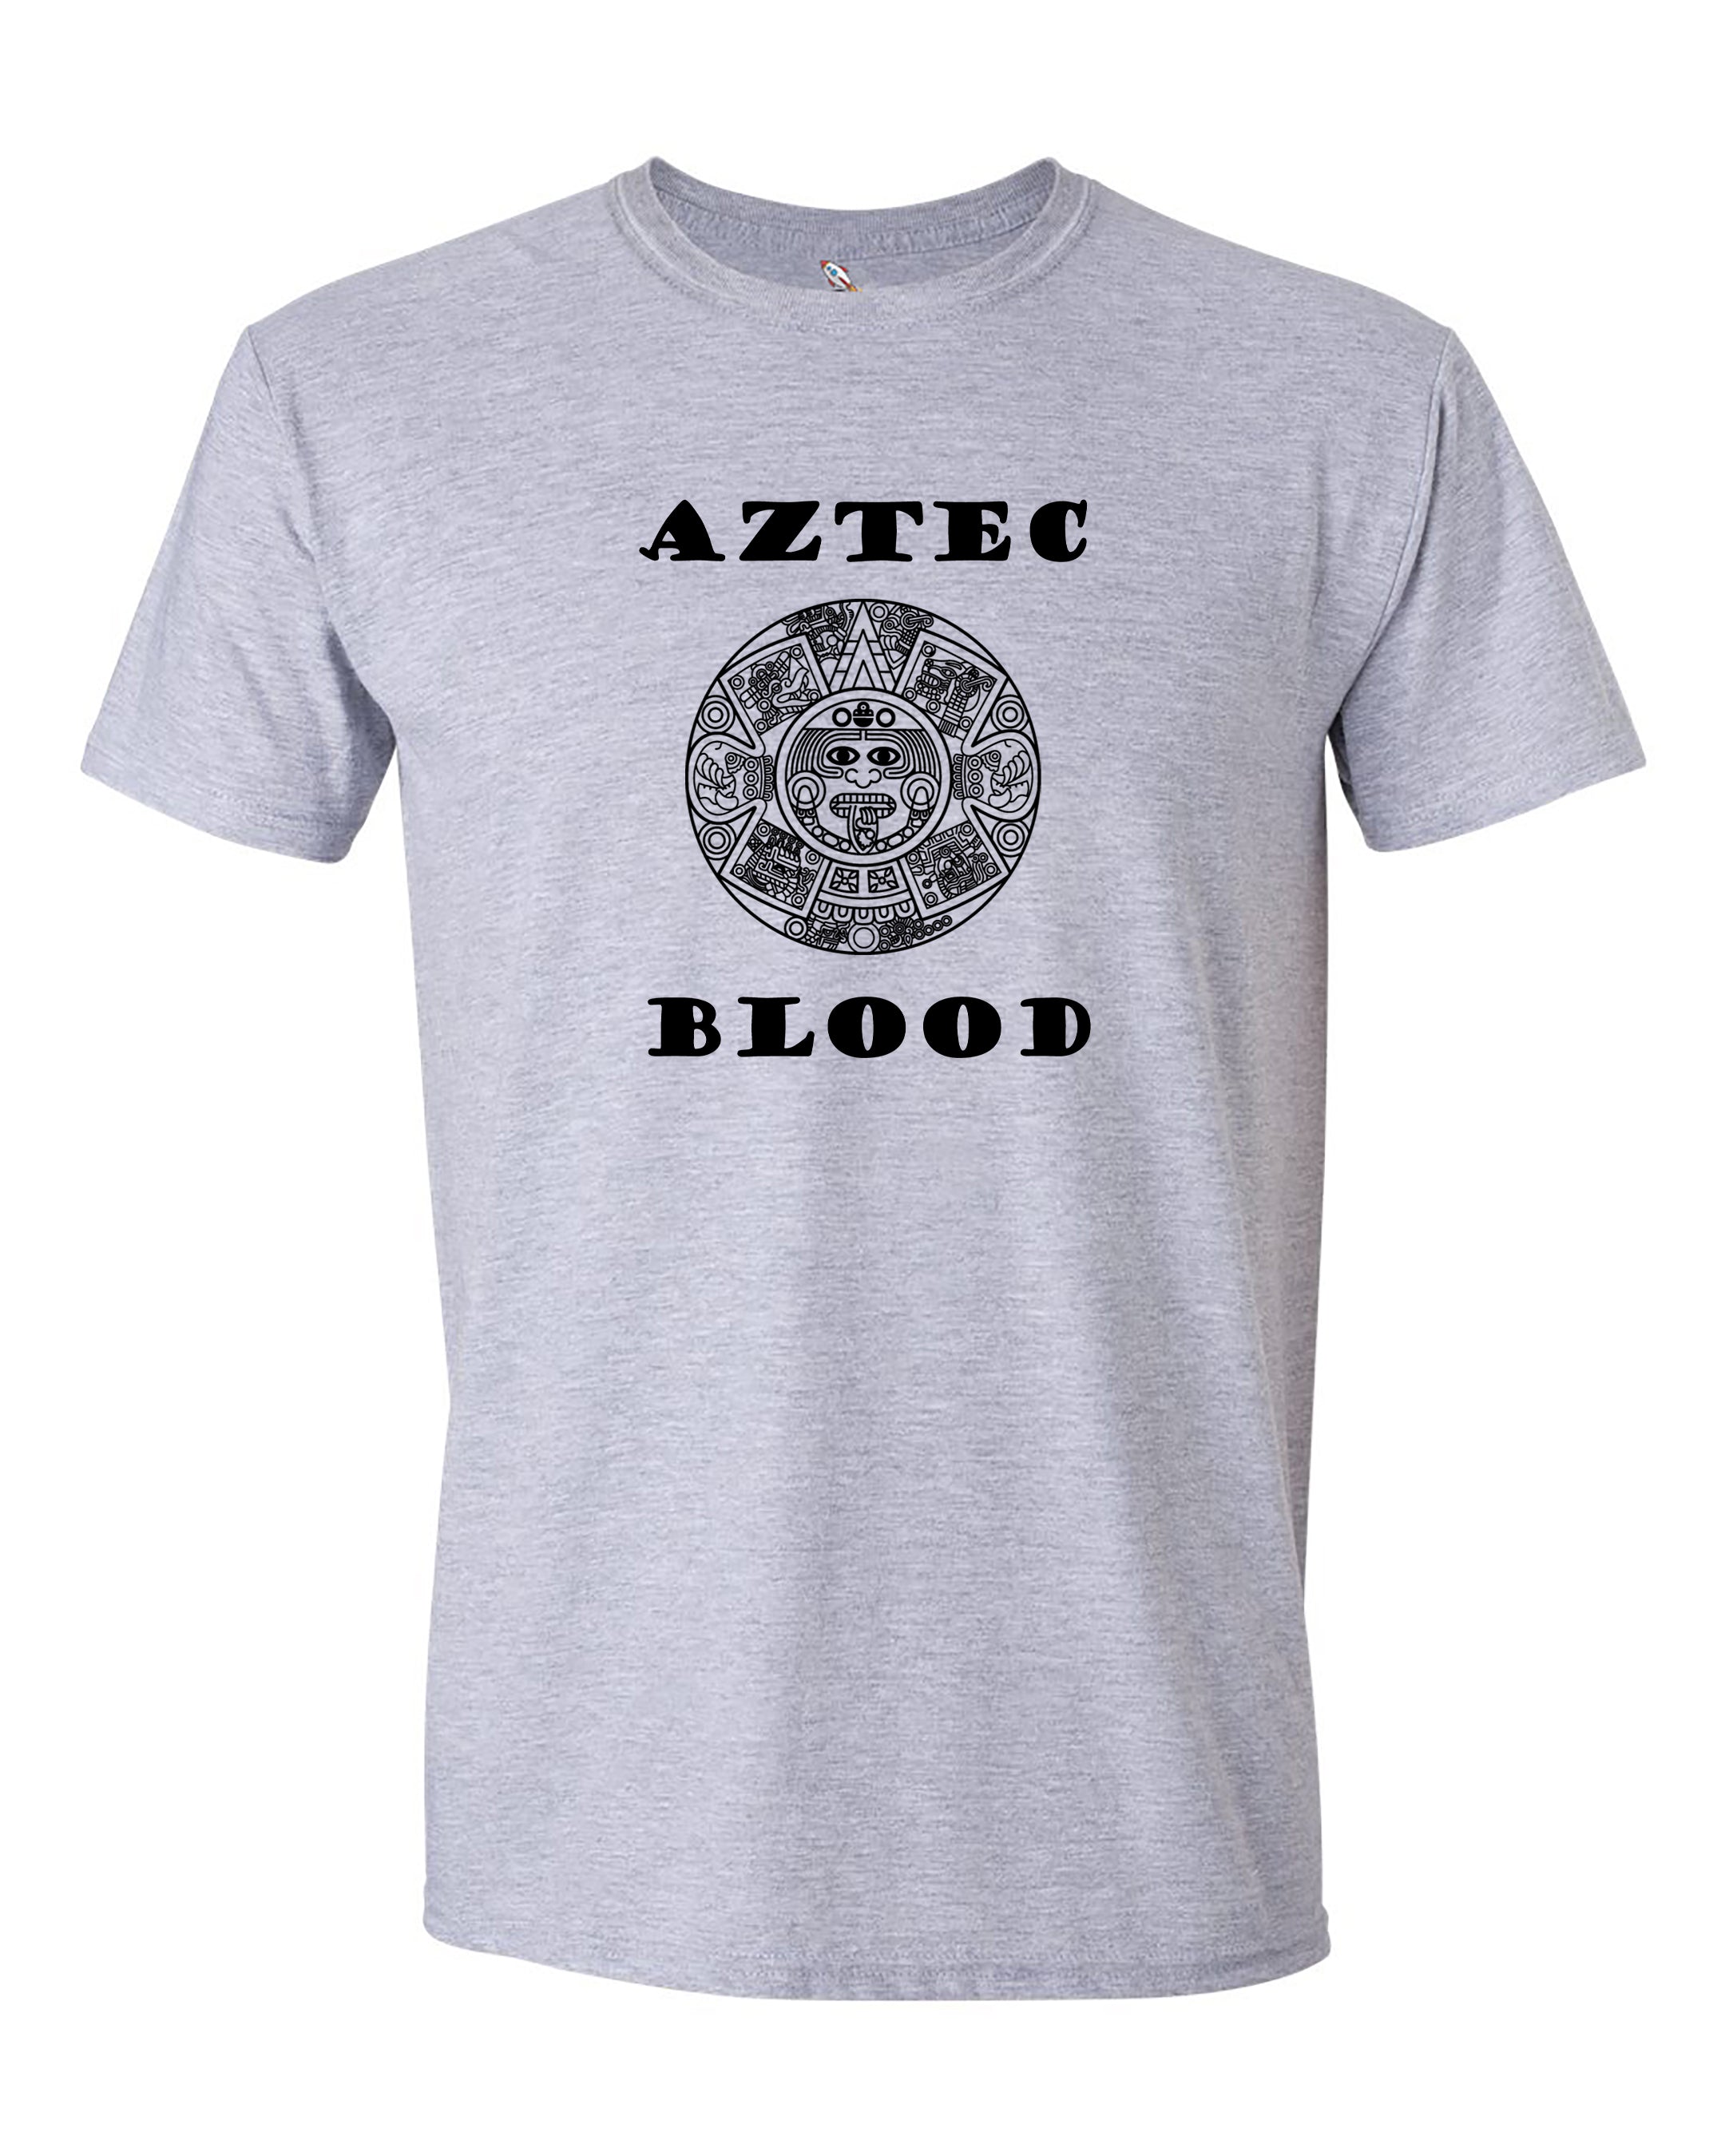 Aztec Blood Tee